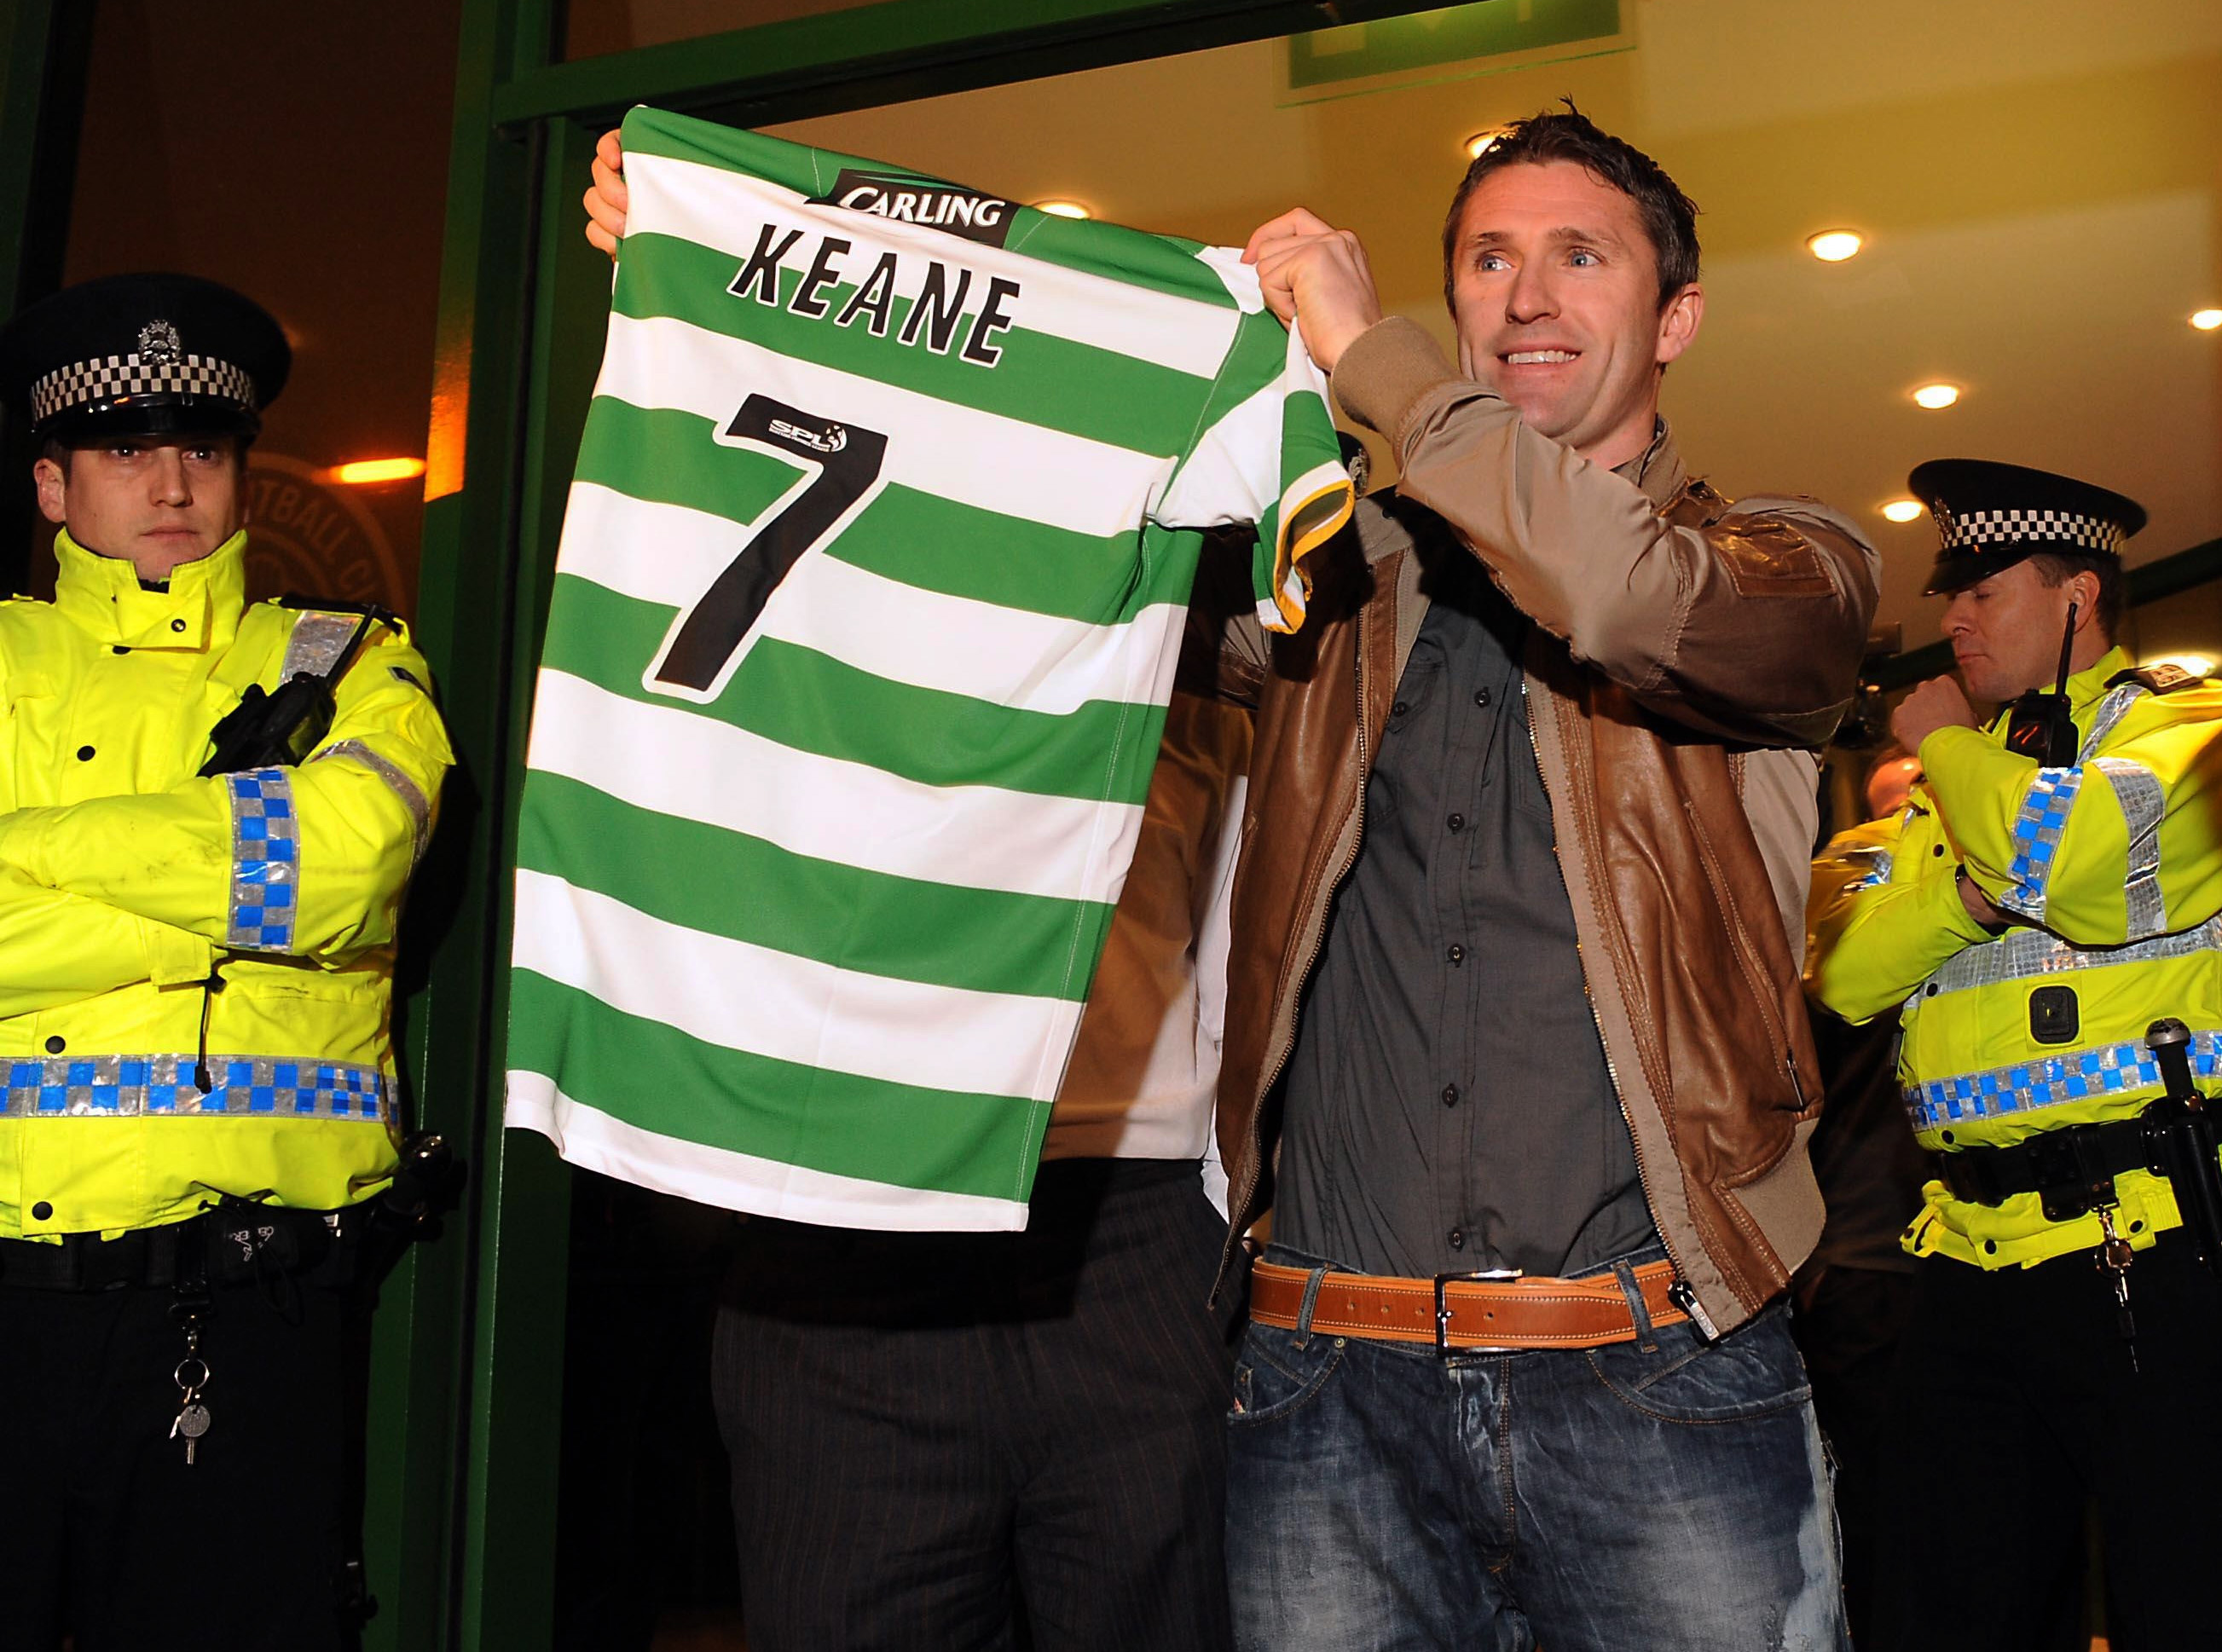 Keane med Celtictröjan.